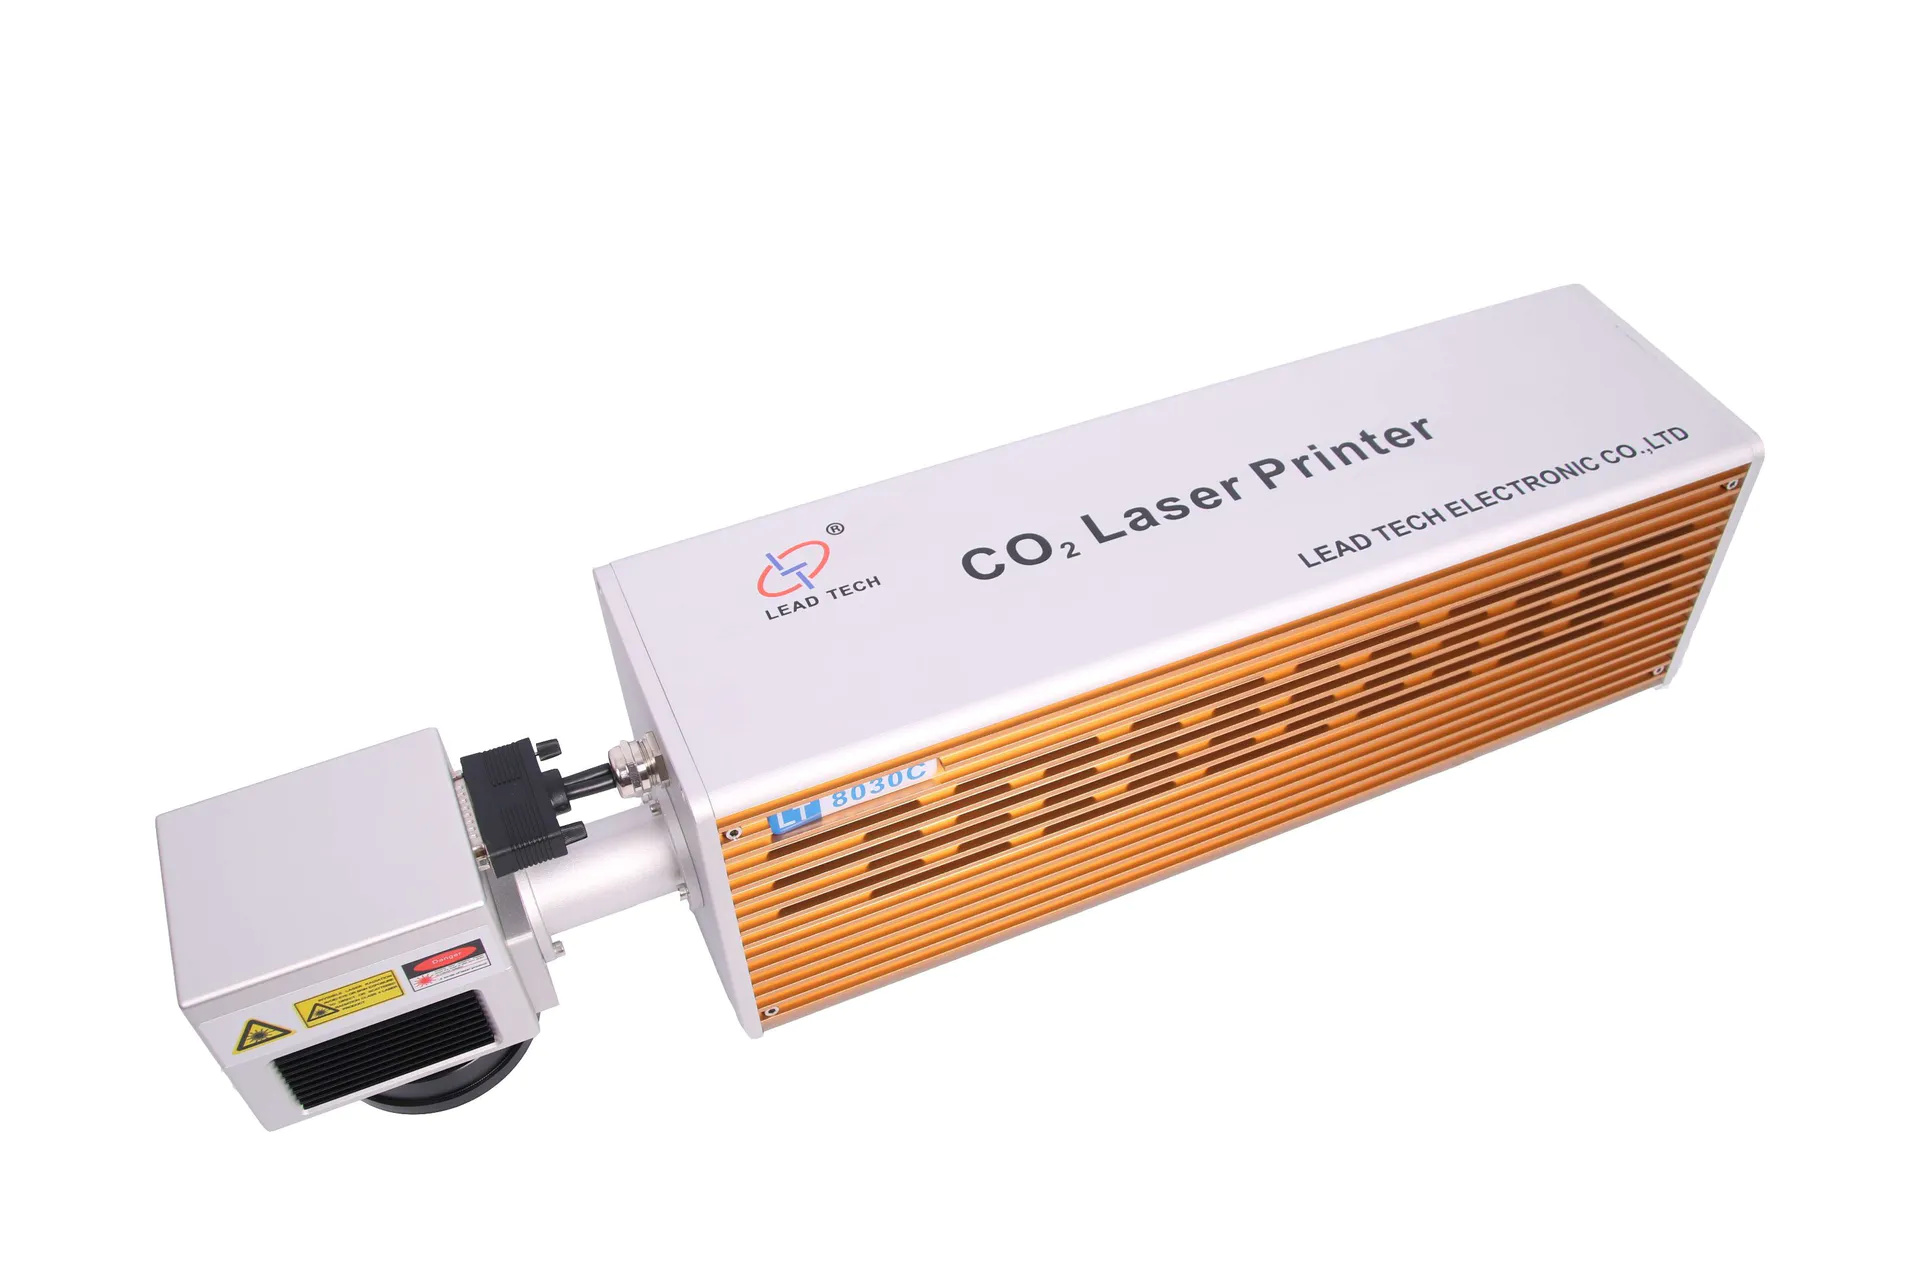 Lt8015c/Lt8030c CO2 High Performance Economic Pet Bottles Laser Inkjet Printer